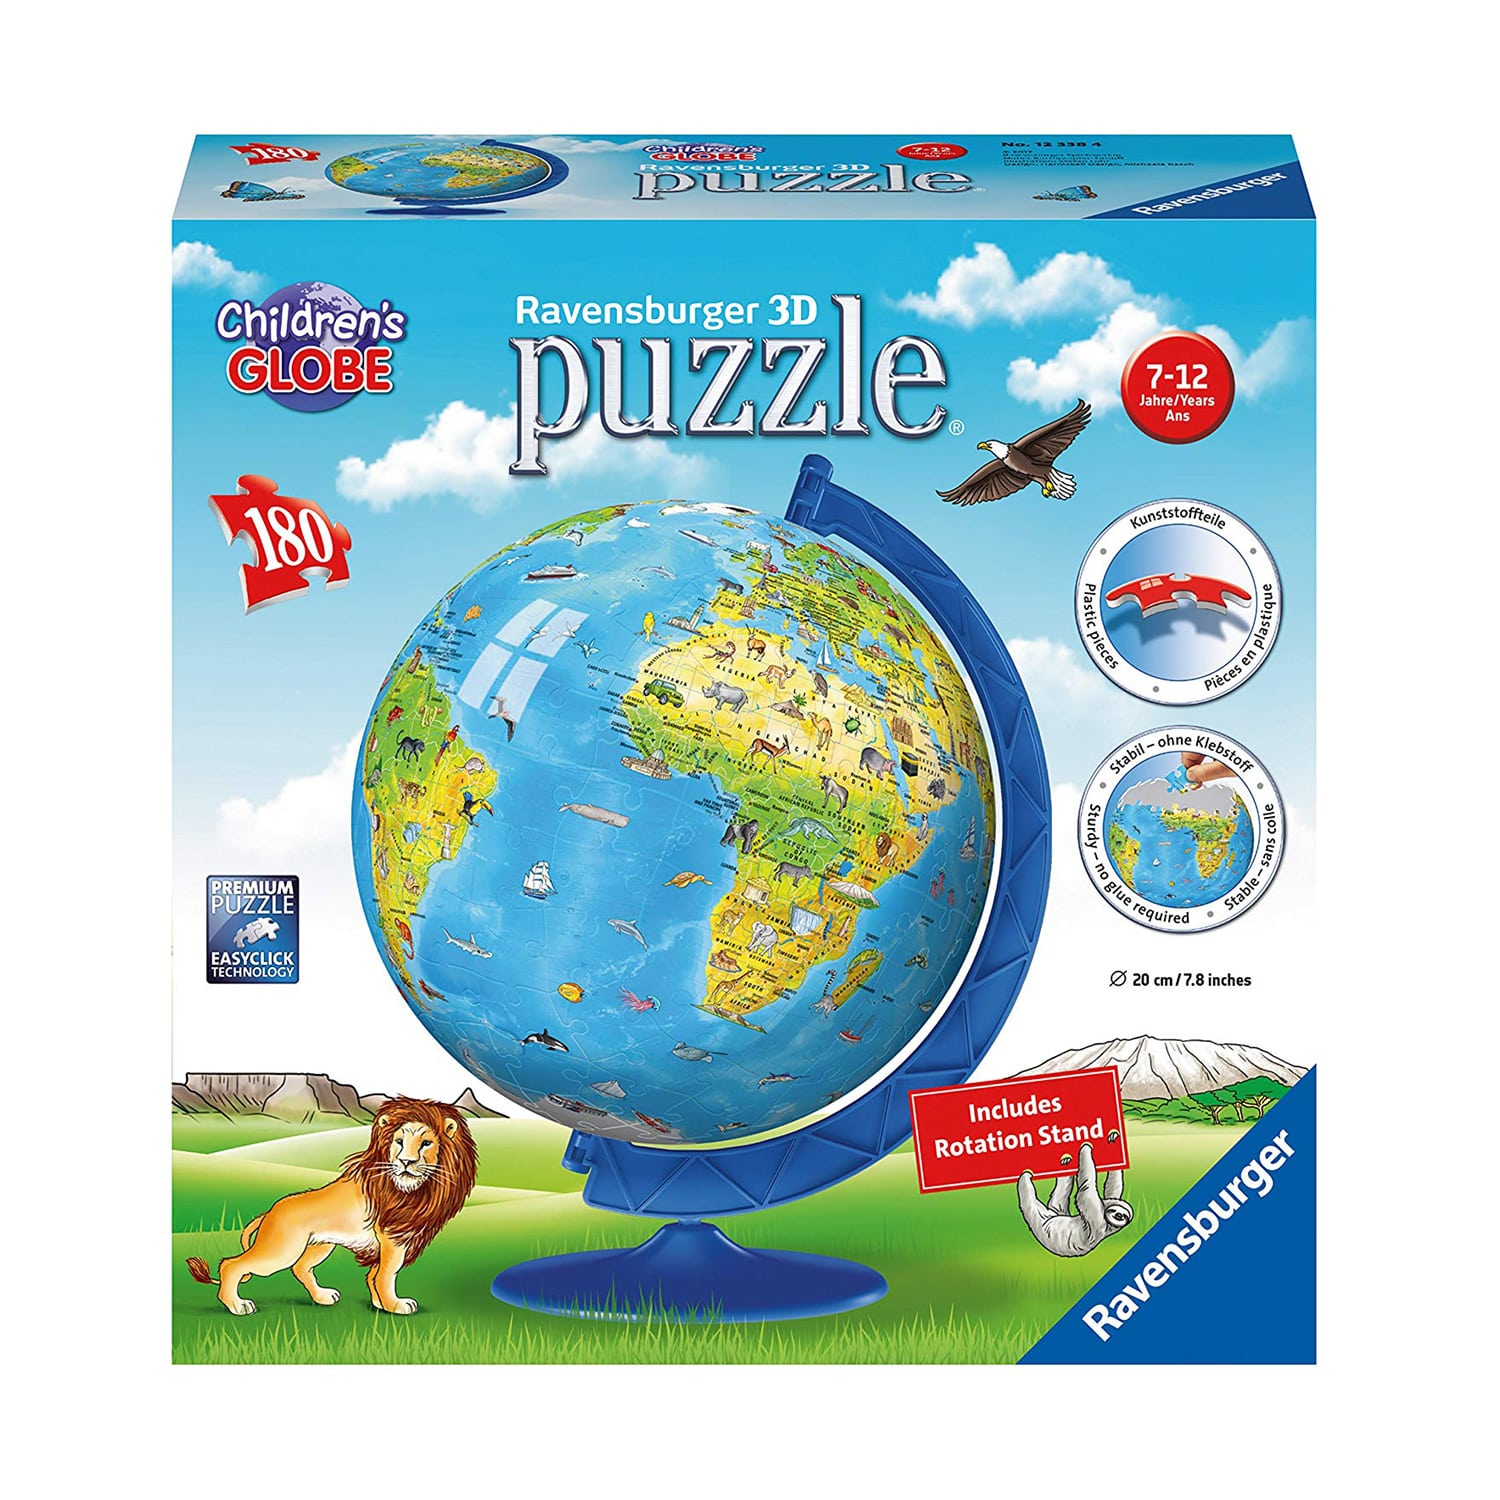 Childrens Globe 3D Puzzleball 180pc